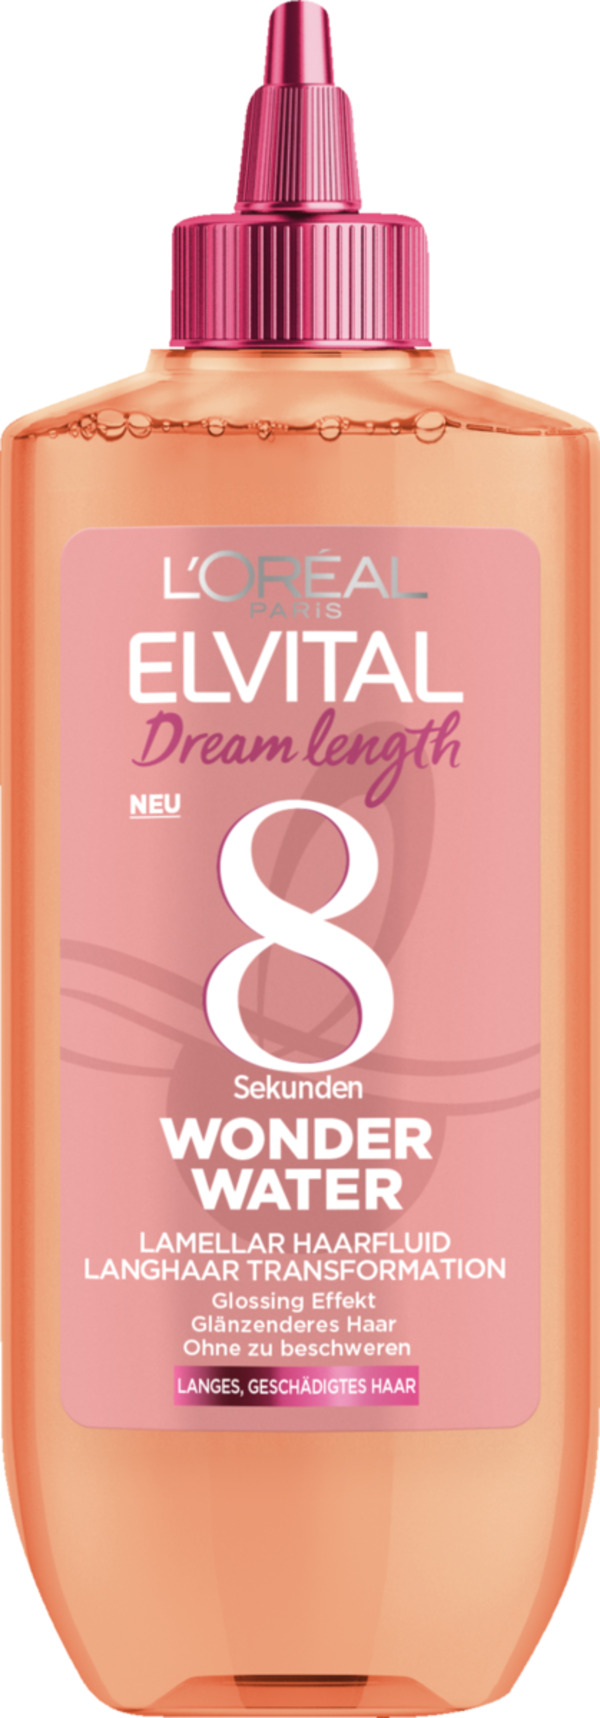 Bild 1 von L’Oréal Paris Elvital Dream length 8 Sekunden Wonder Water